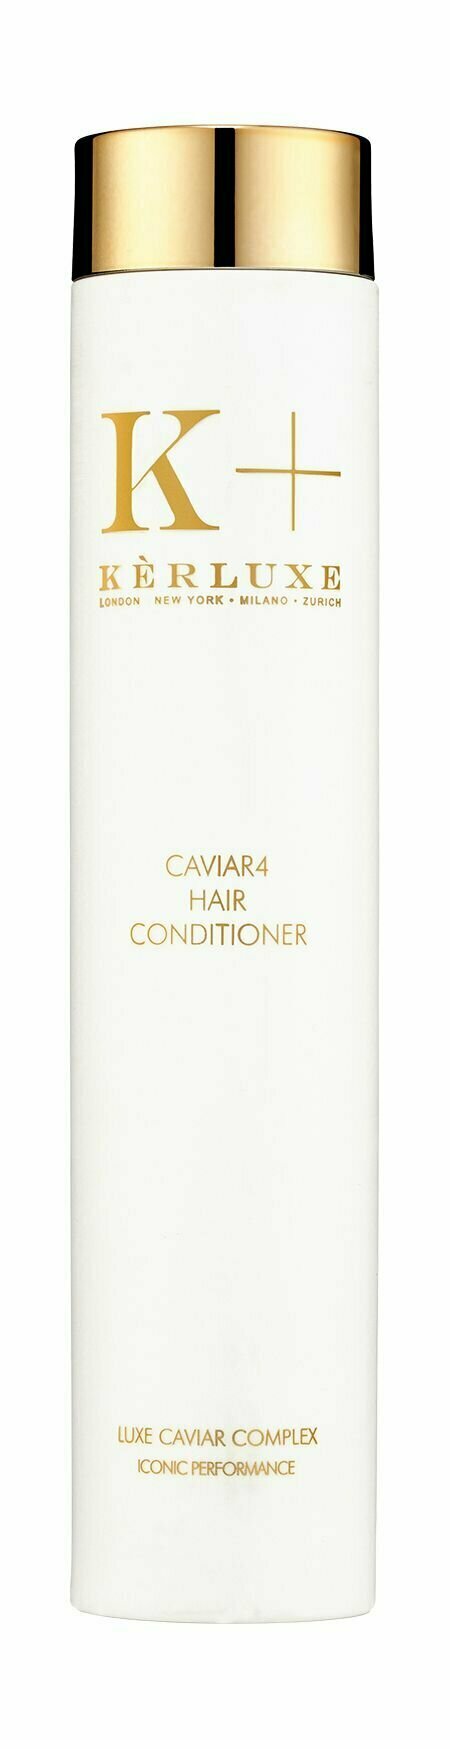 Кондиционер для питания и восстановления волос с икорными экстрактами Kerluxe Caviar4 Hair Conditioner